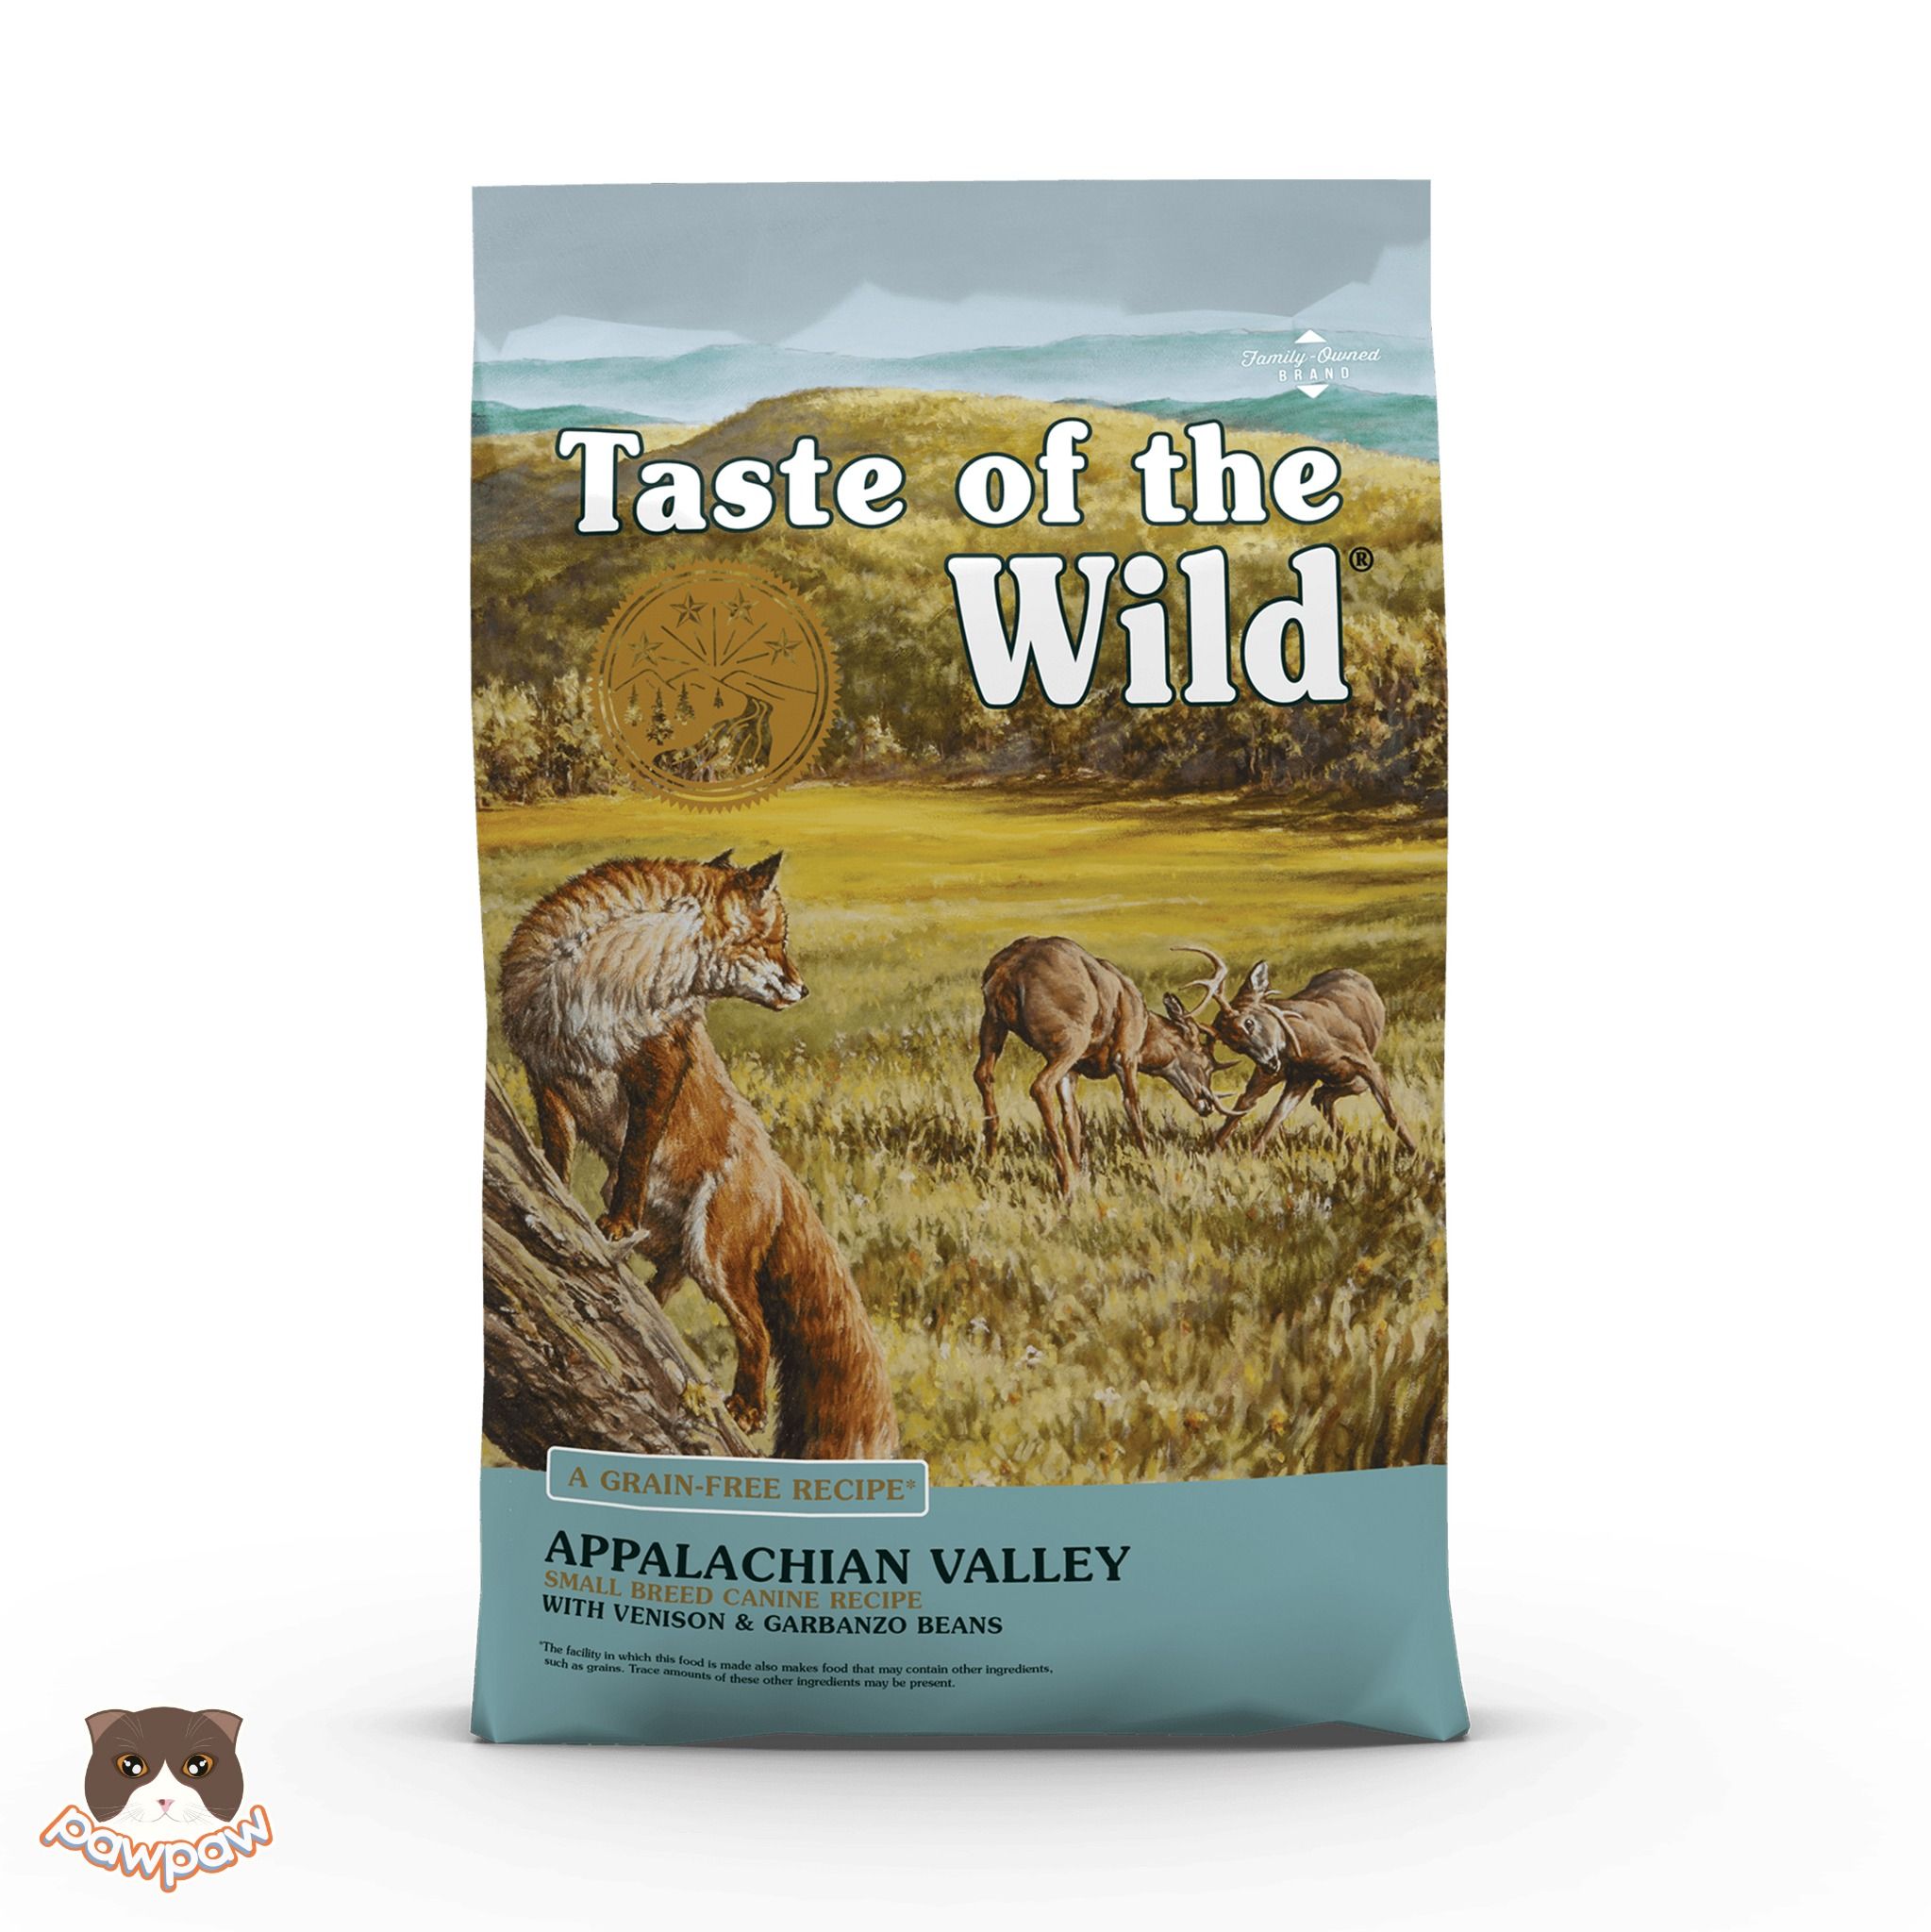  Hạt Taste of the Wild Appalachian Valley thịt nai & đậu 500g cho chó trưởng thành giống nhỏ 